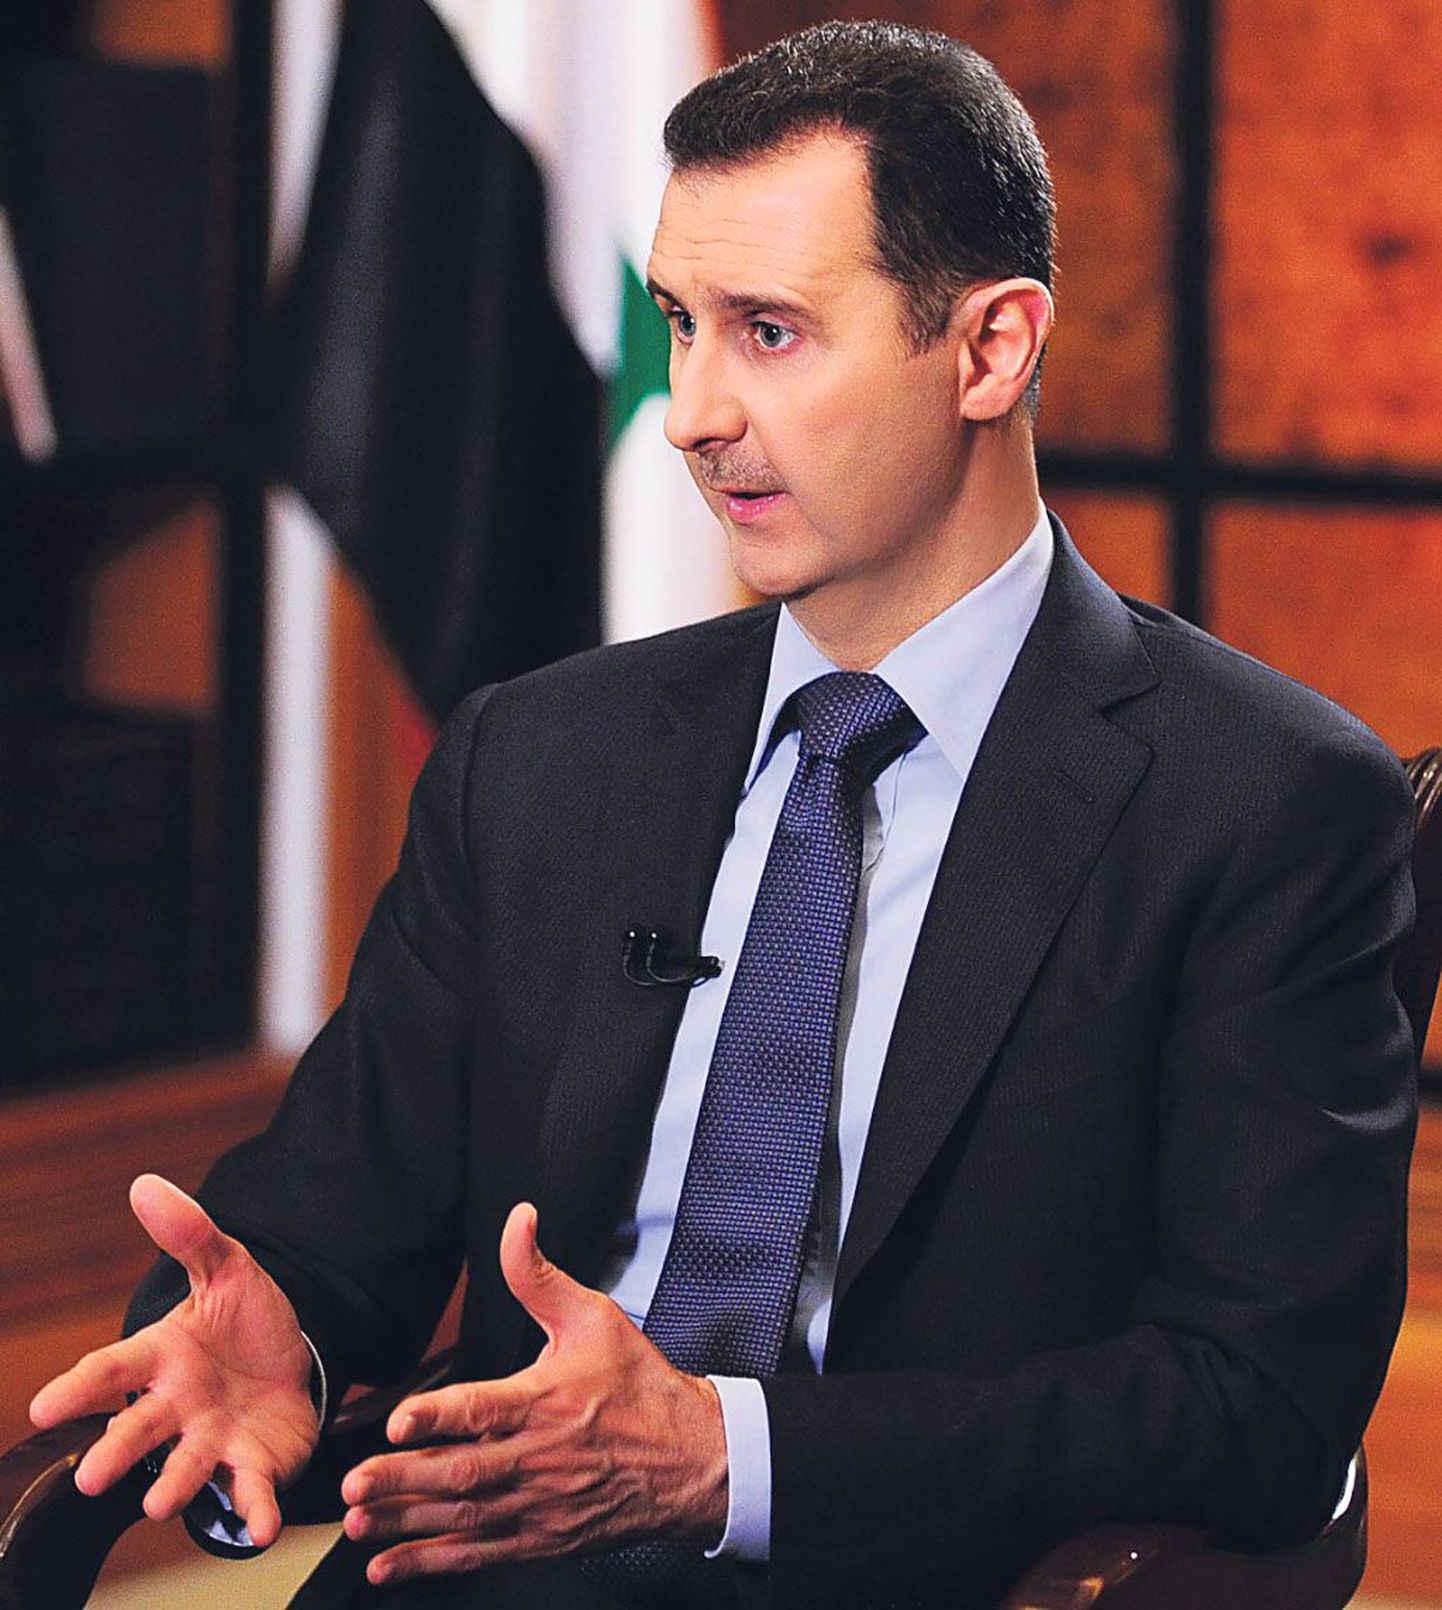 Süüria president Bashar al-Assad võib lahkuda võimult ainult isikliku turvalisuse garantii saamisel ja selle rahvusvahelisel tagamisel.